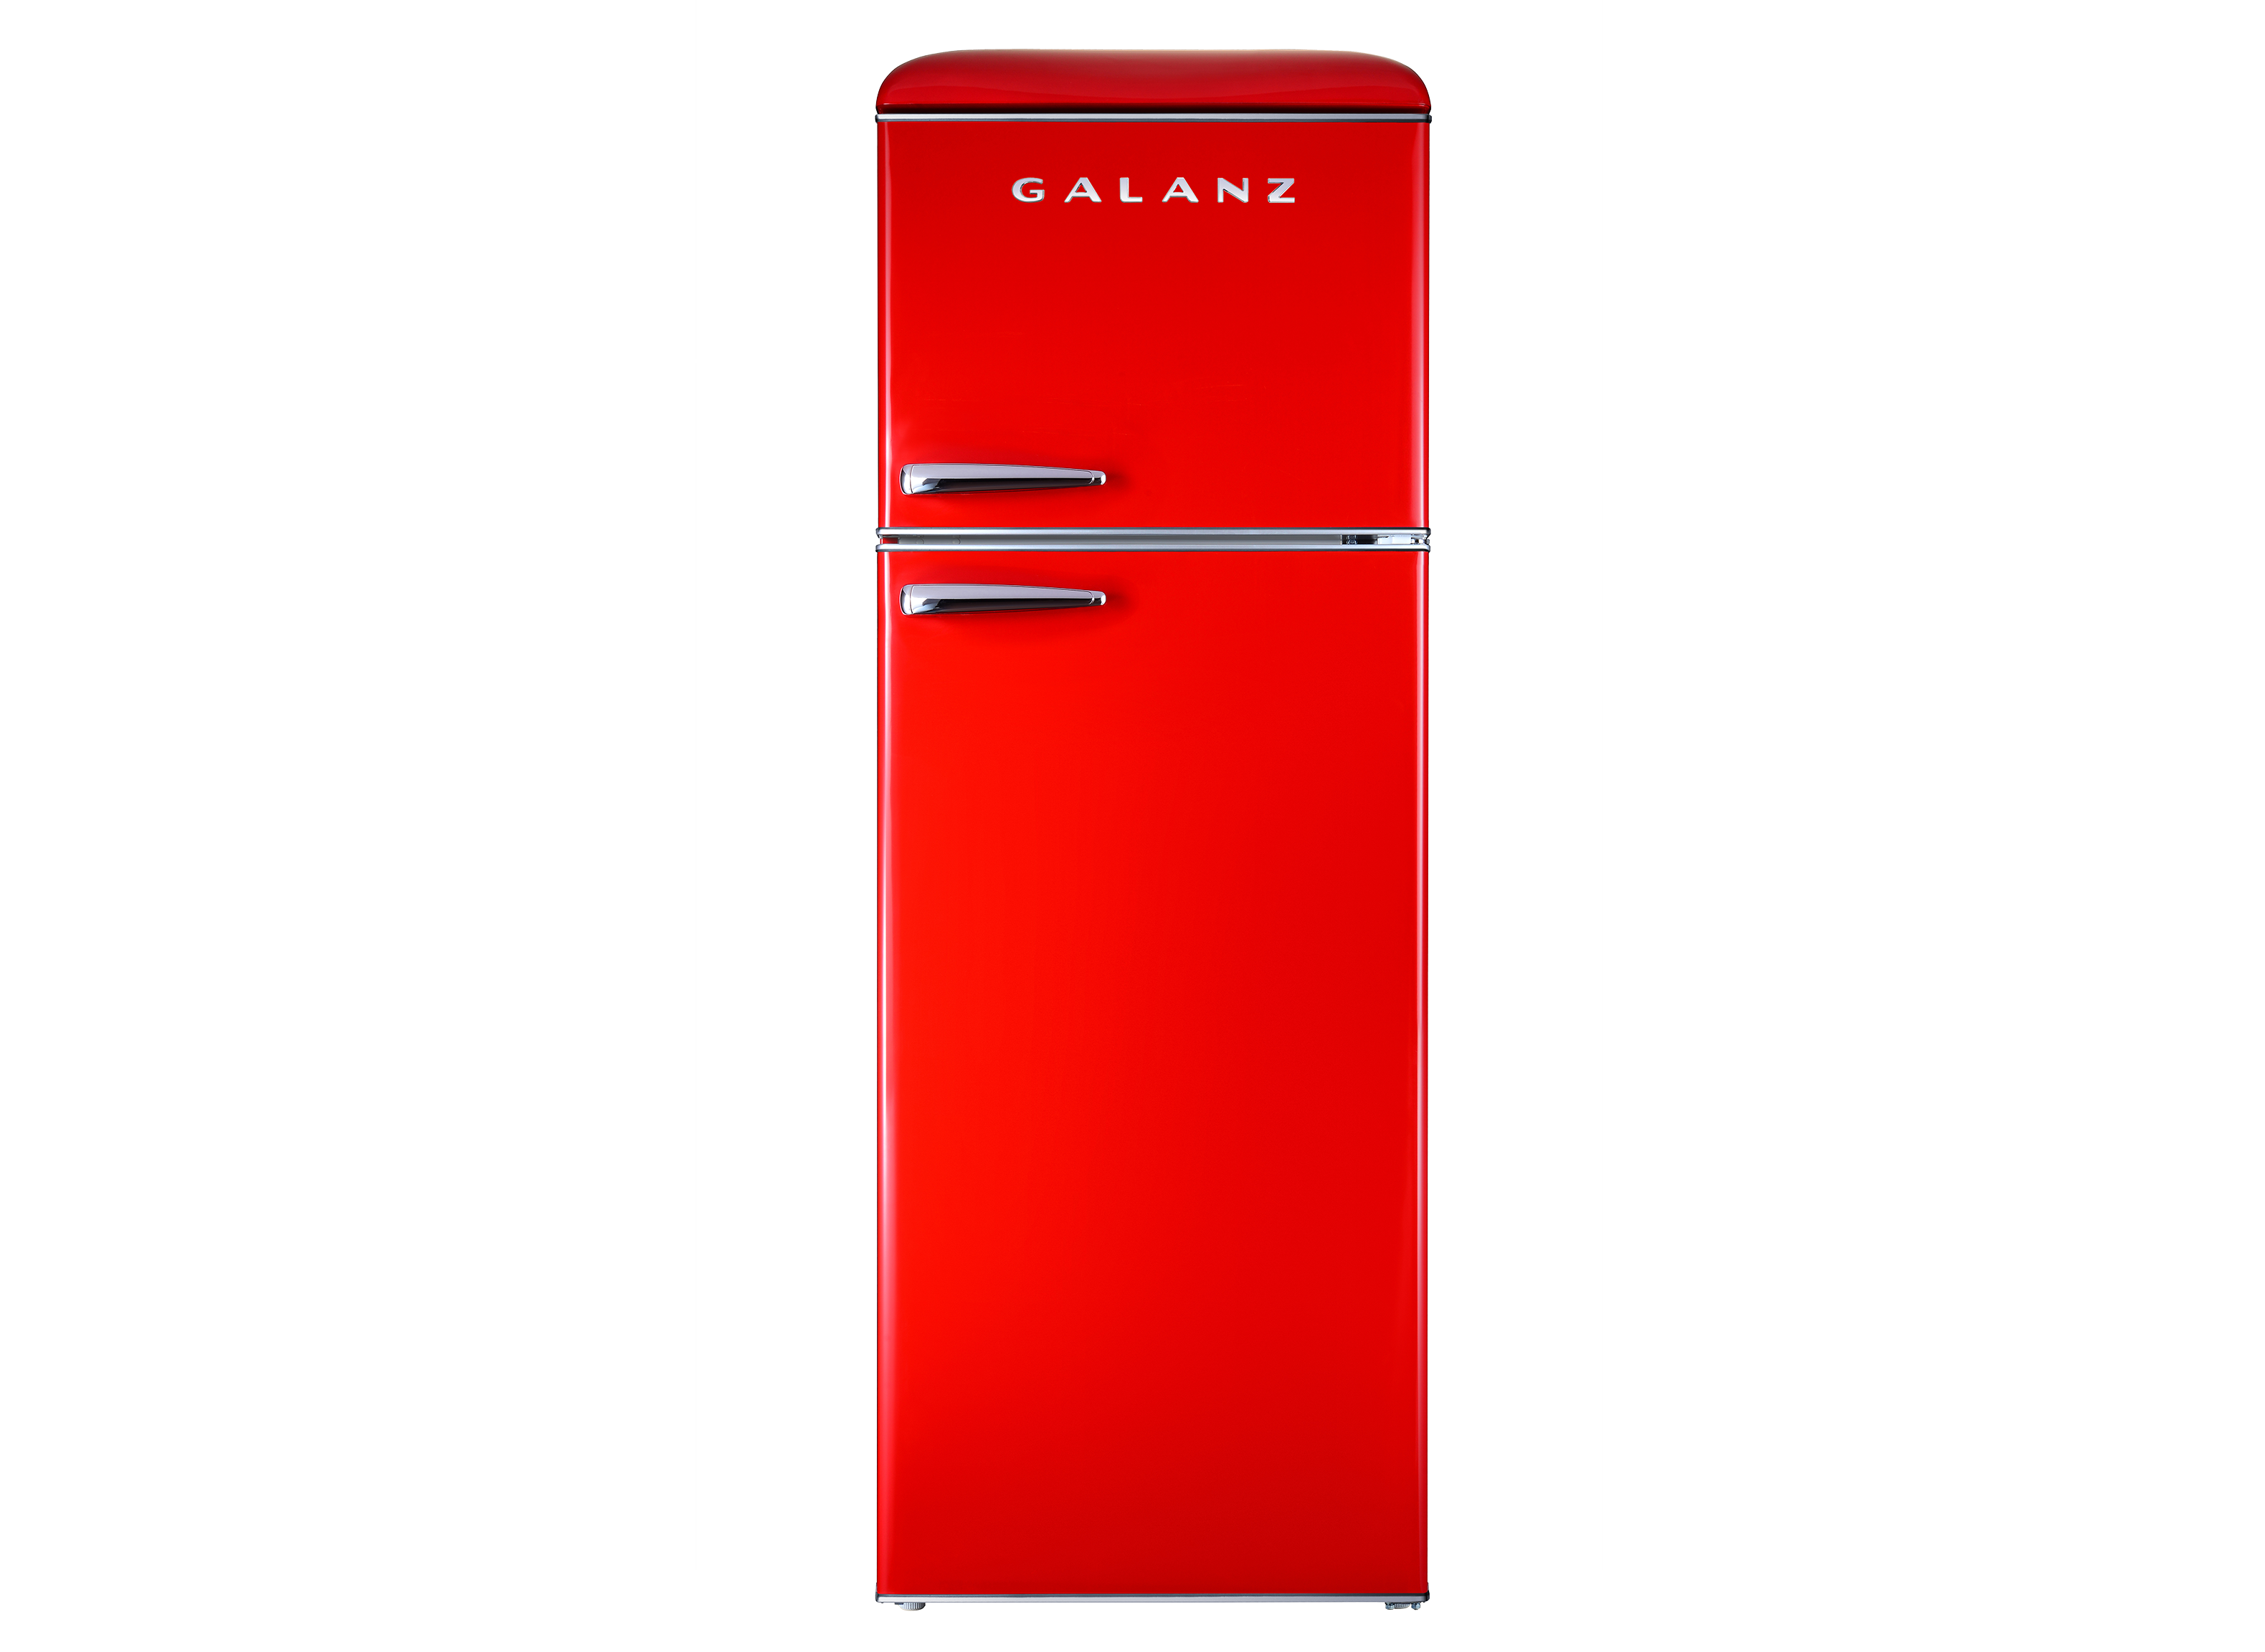 Galanz GLR12TRDEFR Refrigerator Review - Consumer Reports